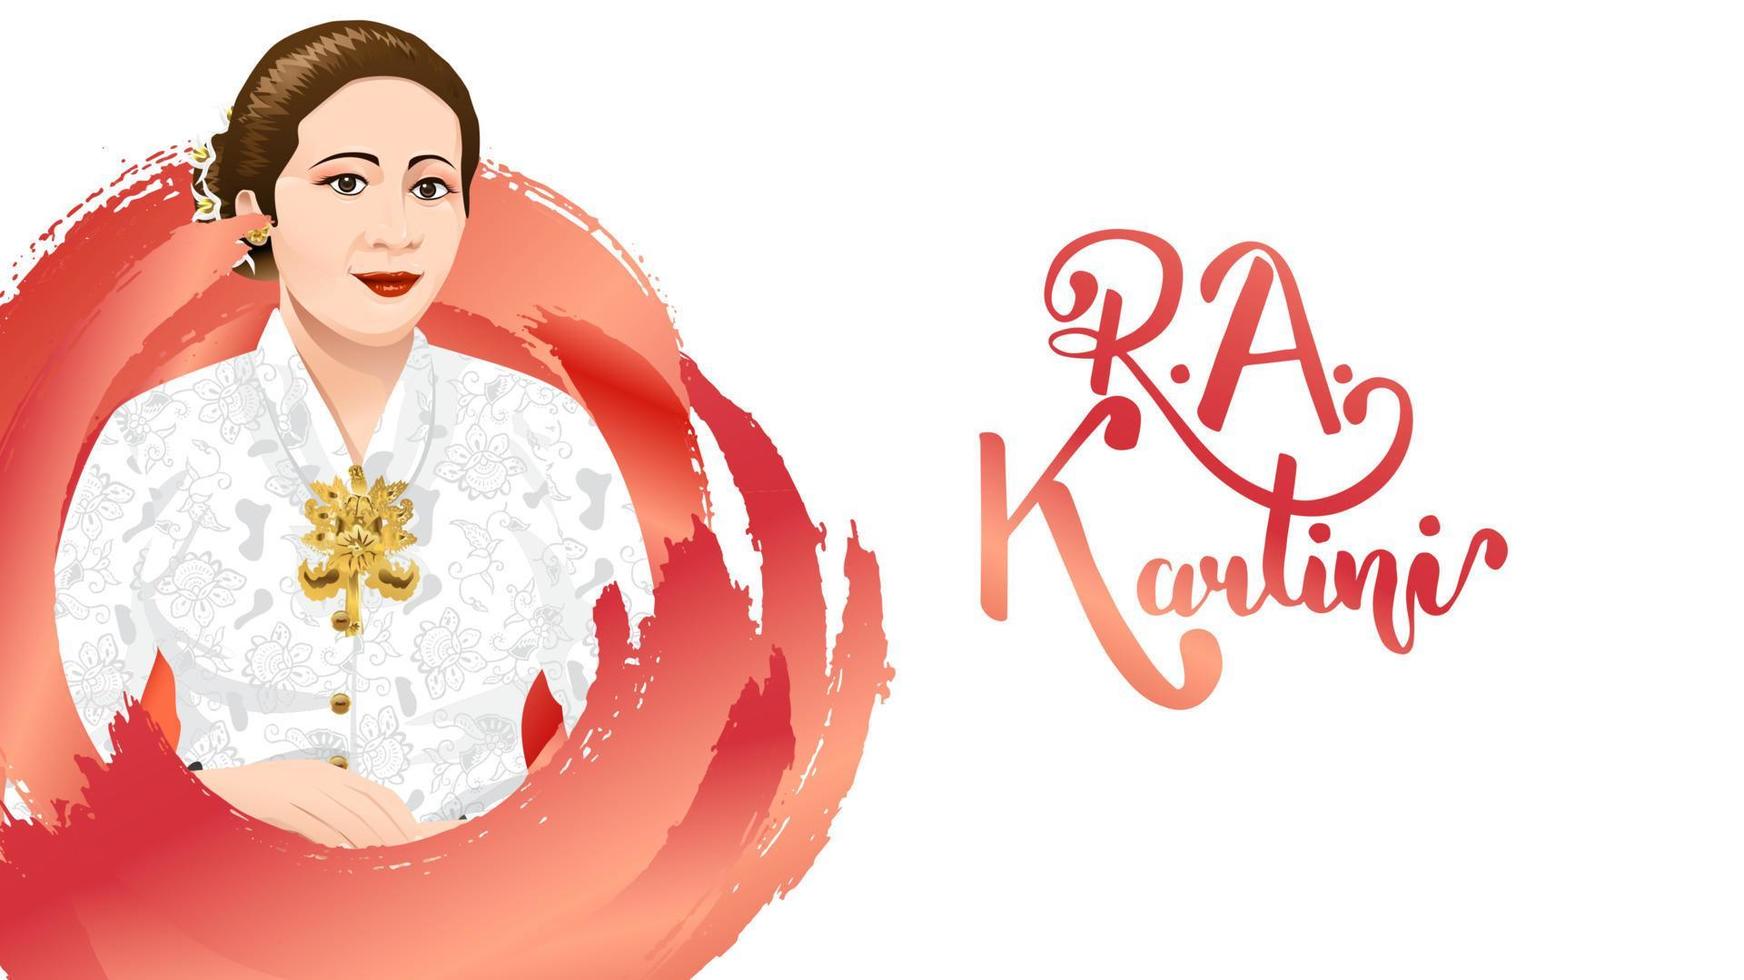 kartini day, ra kartini de helden van vrouwen en mensenrechten in Indonesië. banner sjabloon ontwerp achtergrond - vector